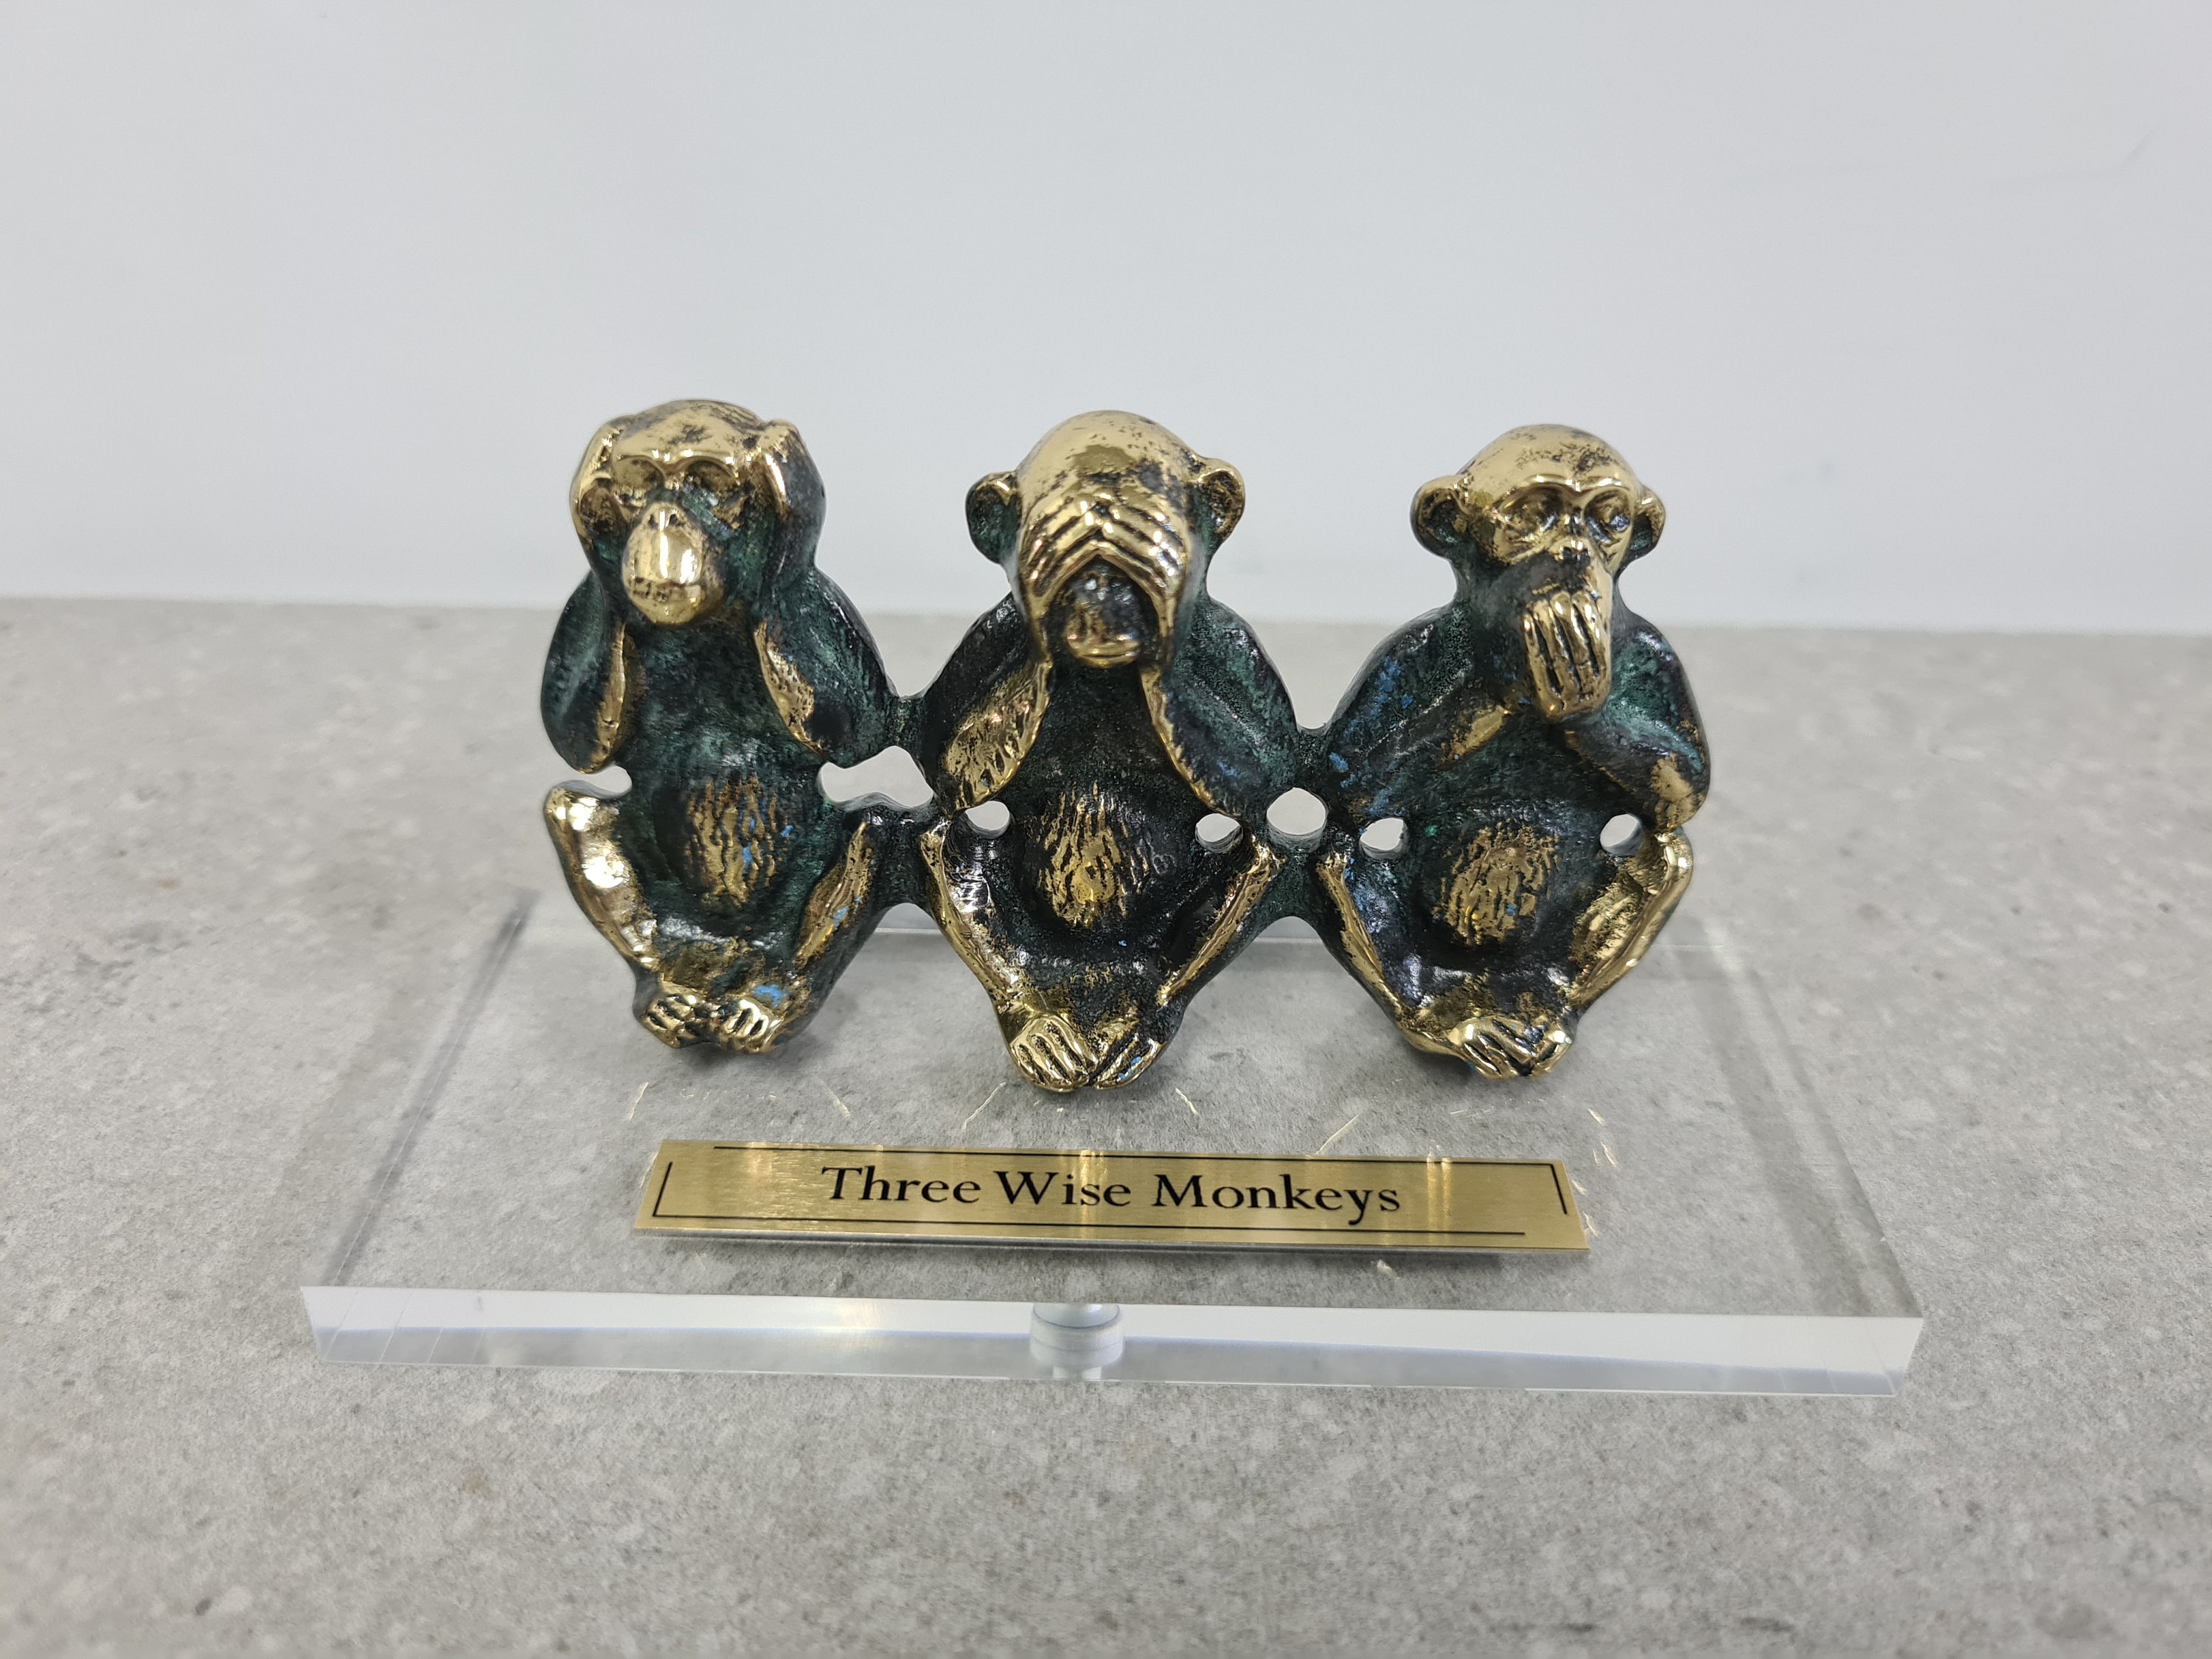 6 oder 15 STÜCK, Antik Silber 3D 3 Wise Monkeys Charm Anhänger